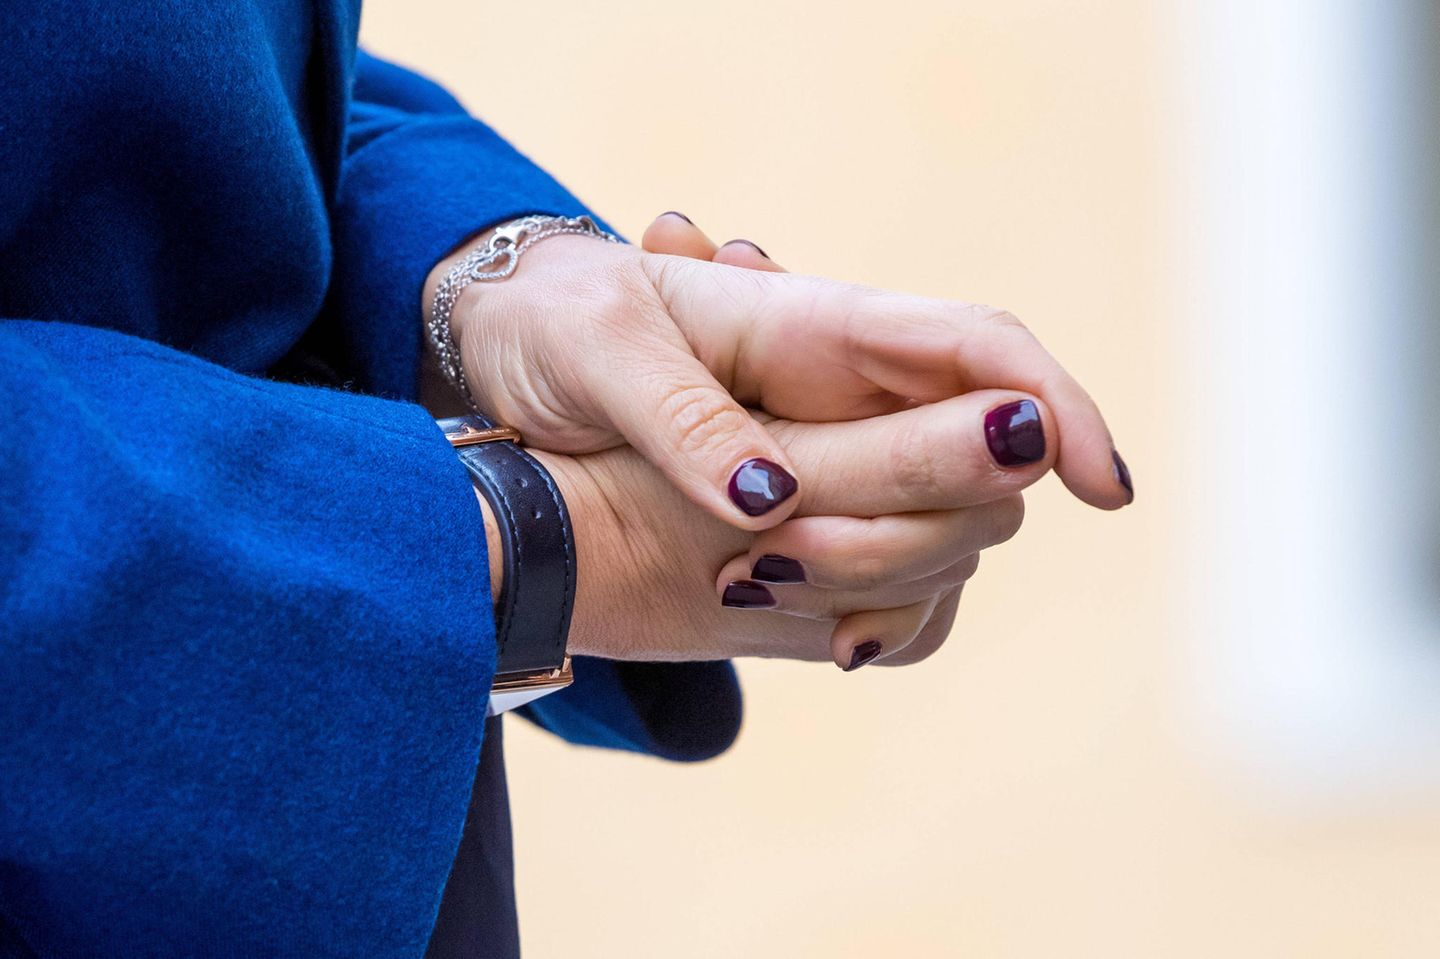 Von dezent bis knallig: Victoria von Schweden ist mittlerweile unter den Royals fast bekannt für ihre bunten Nagellacke. Hier trägt sie einen dunkles Rot-Braun. Die Farbe gibt einen tollen Kontrast zum blauen Suit ab.